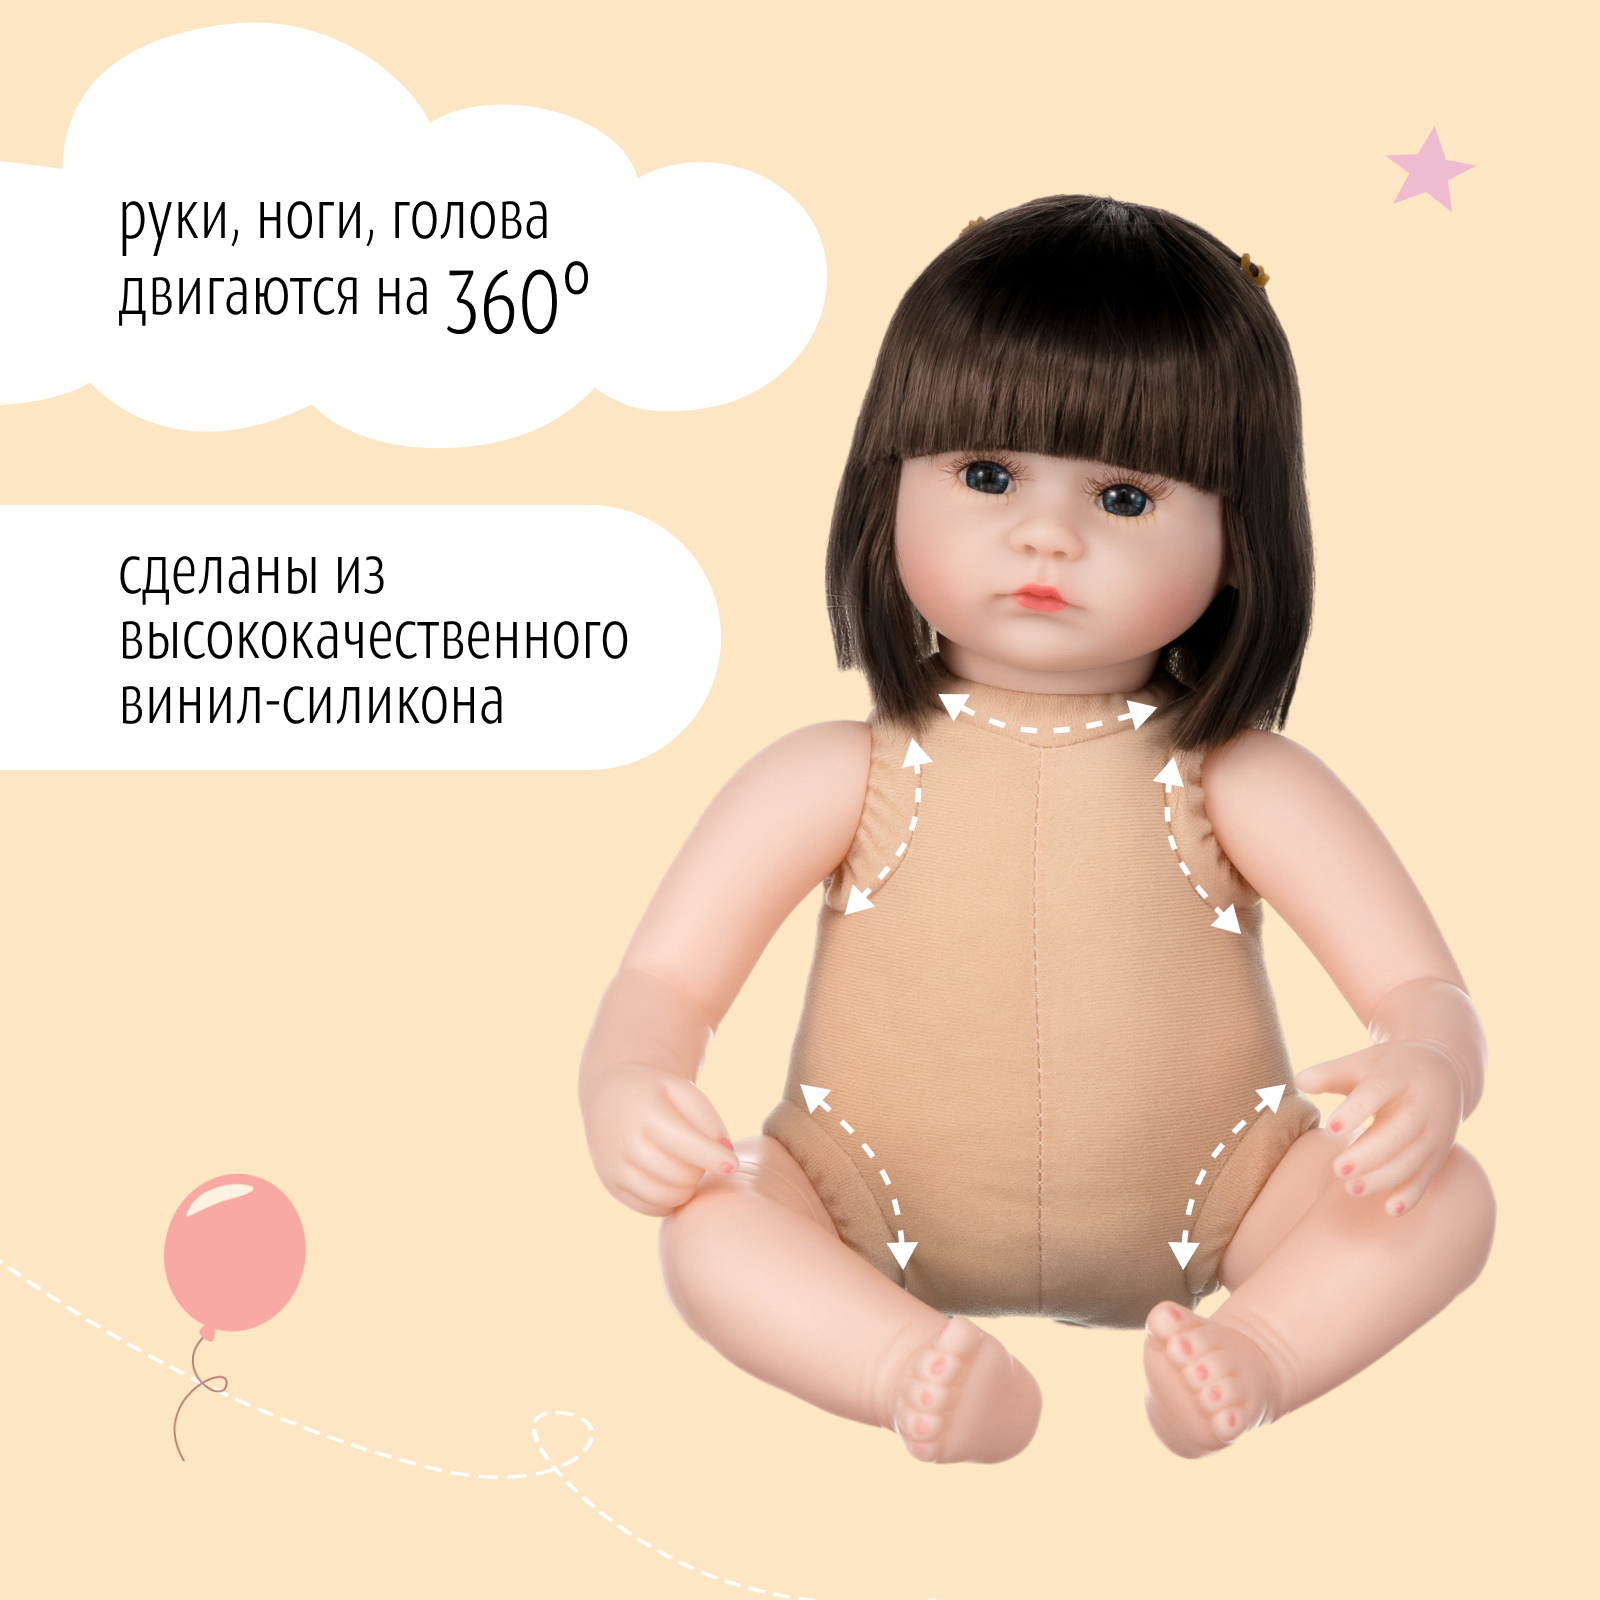 Кукла Реборн QA BABY Мишель мальчик большой пупс набор игрушки для девочки 42 см 45001 - фото 11